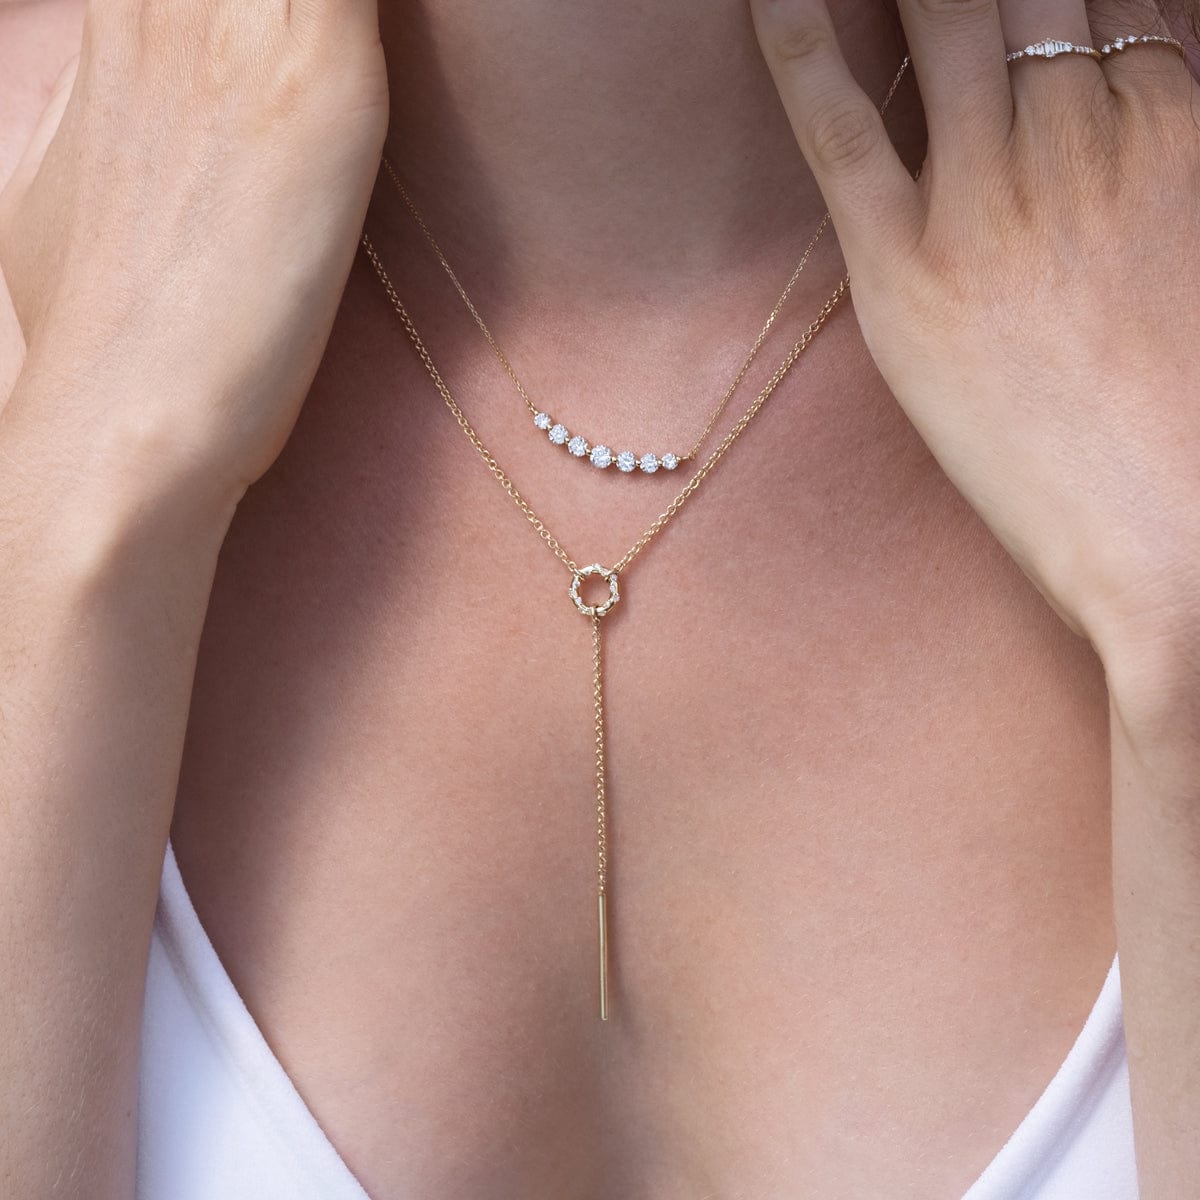 Fine Necklaces - Delicate Chains, Pendants & Chokers | Catbird